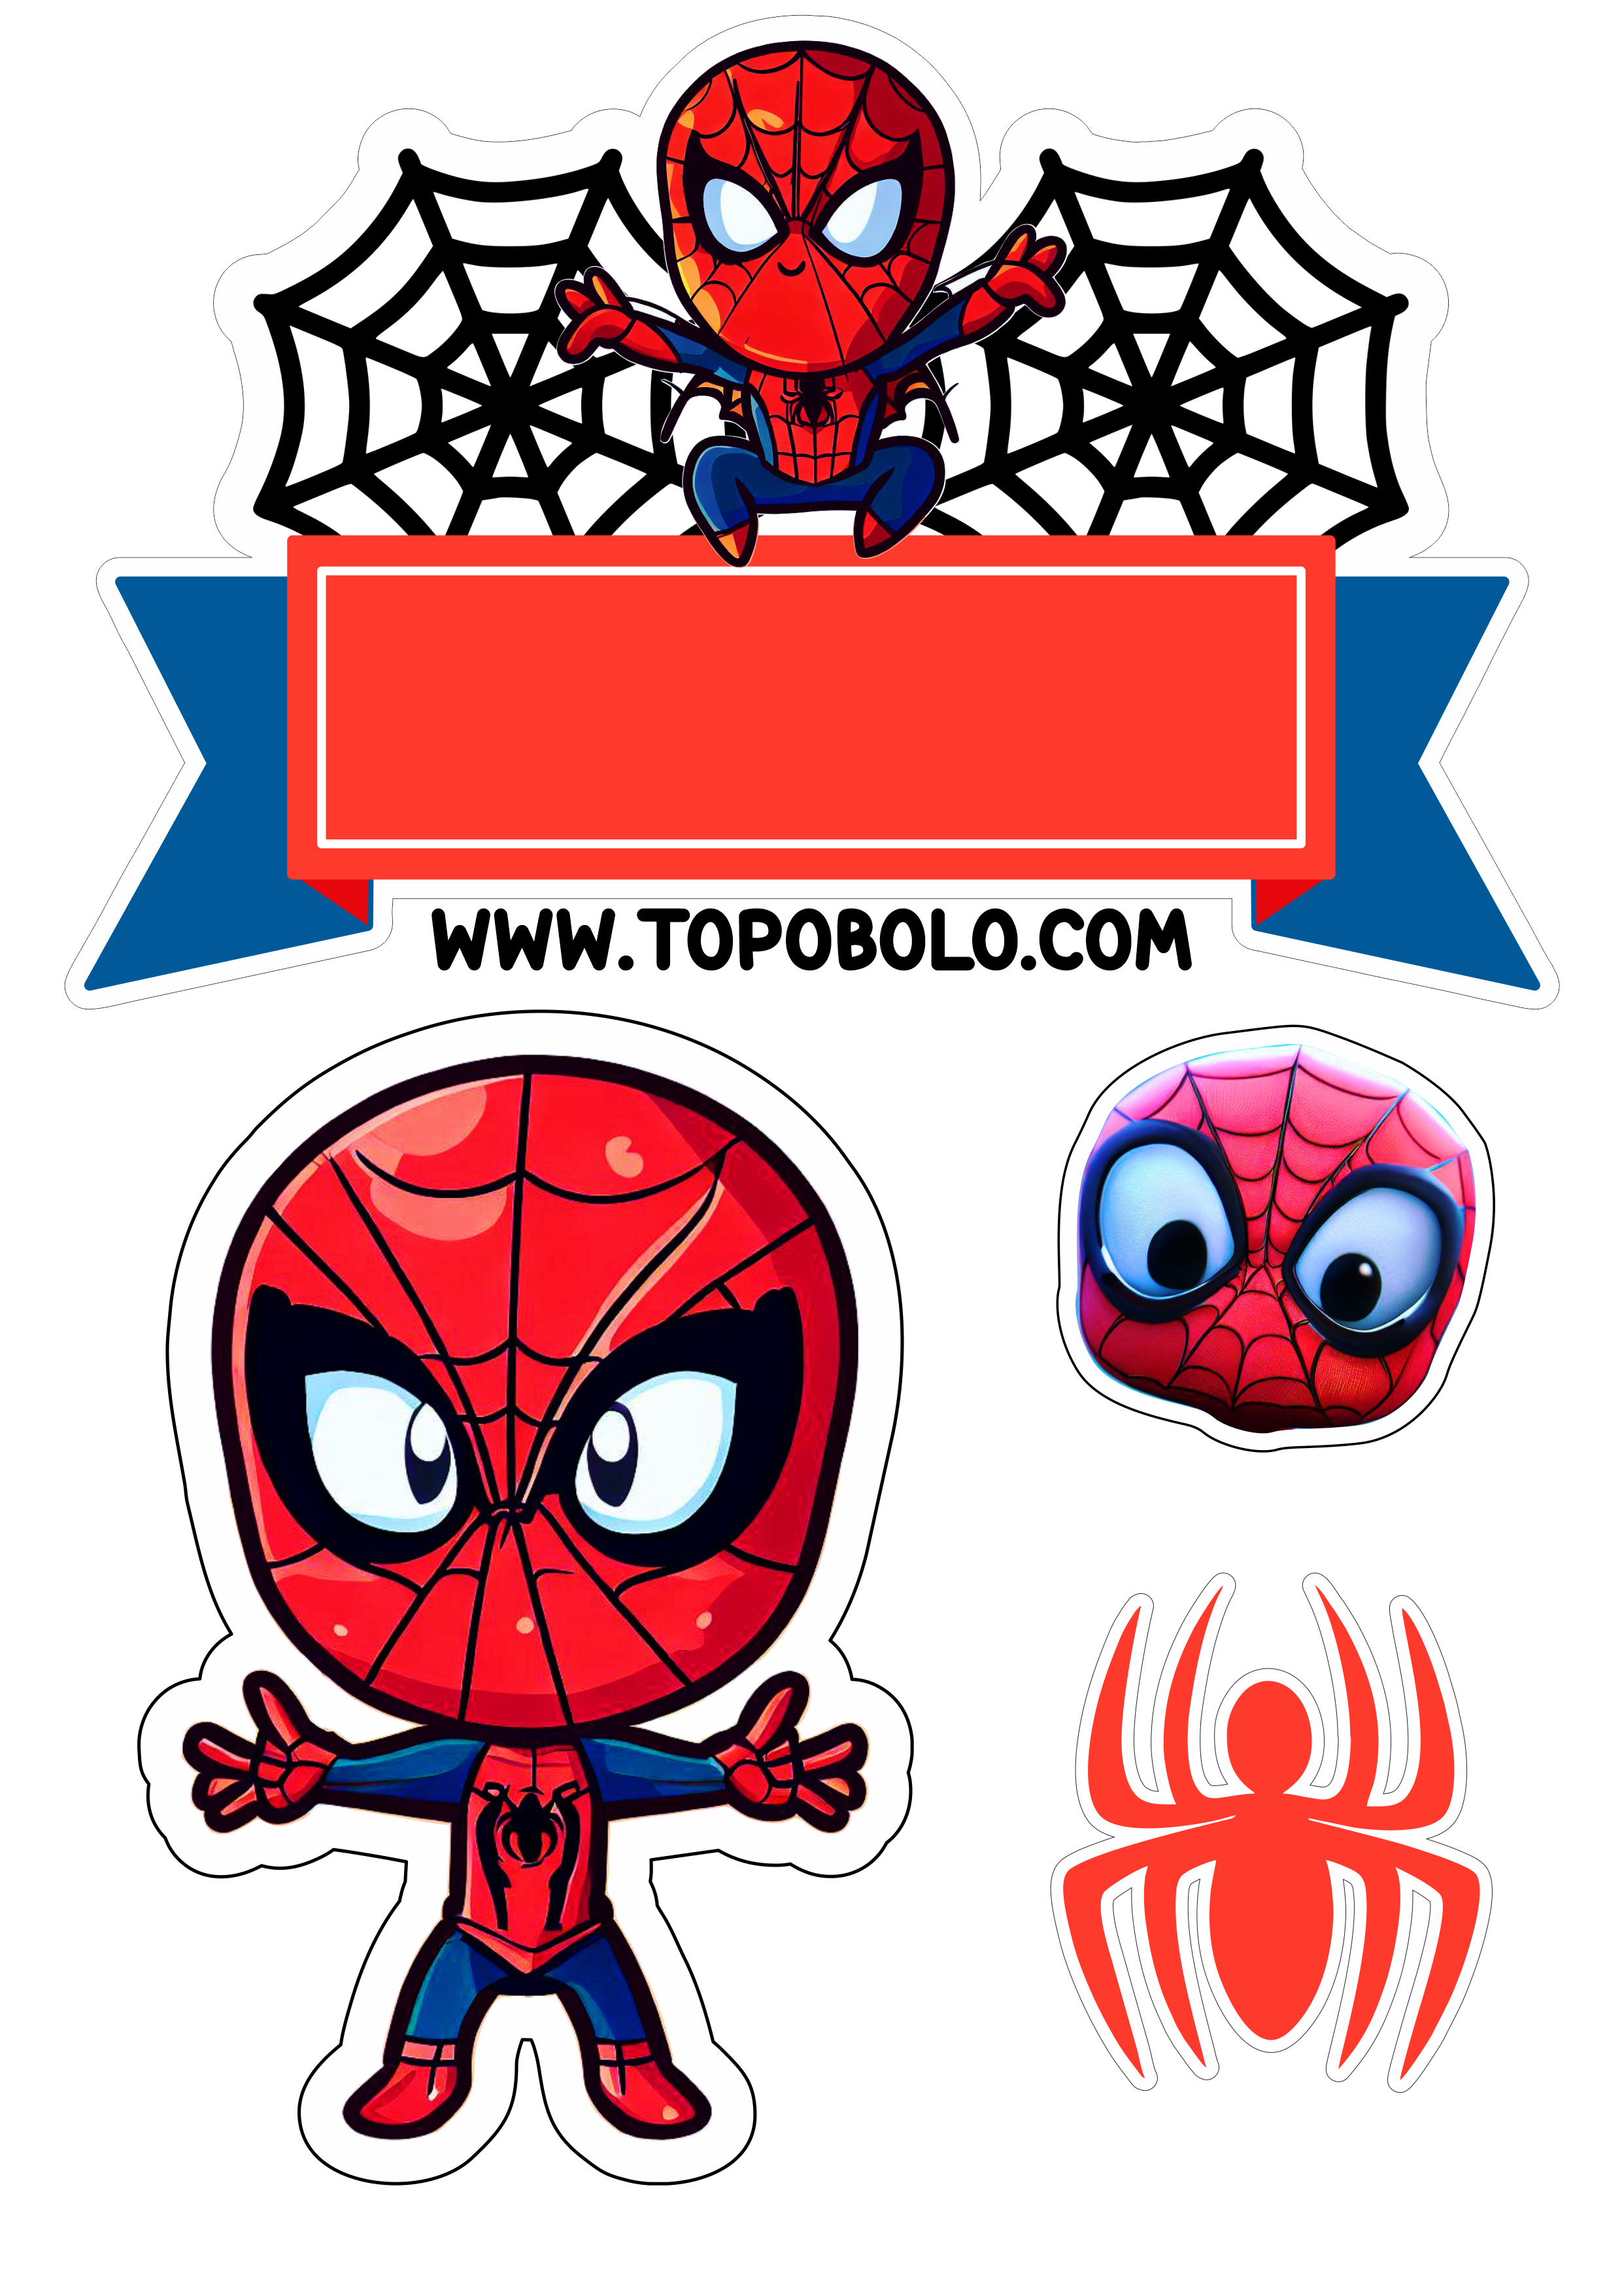 Homem-Aranha aniversário infantil Topo de bolo para imprimir Spider-Man cute chibi papelaria criativa hora da festa free png